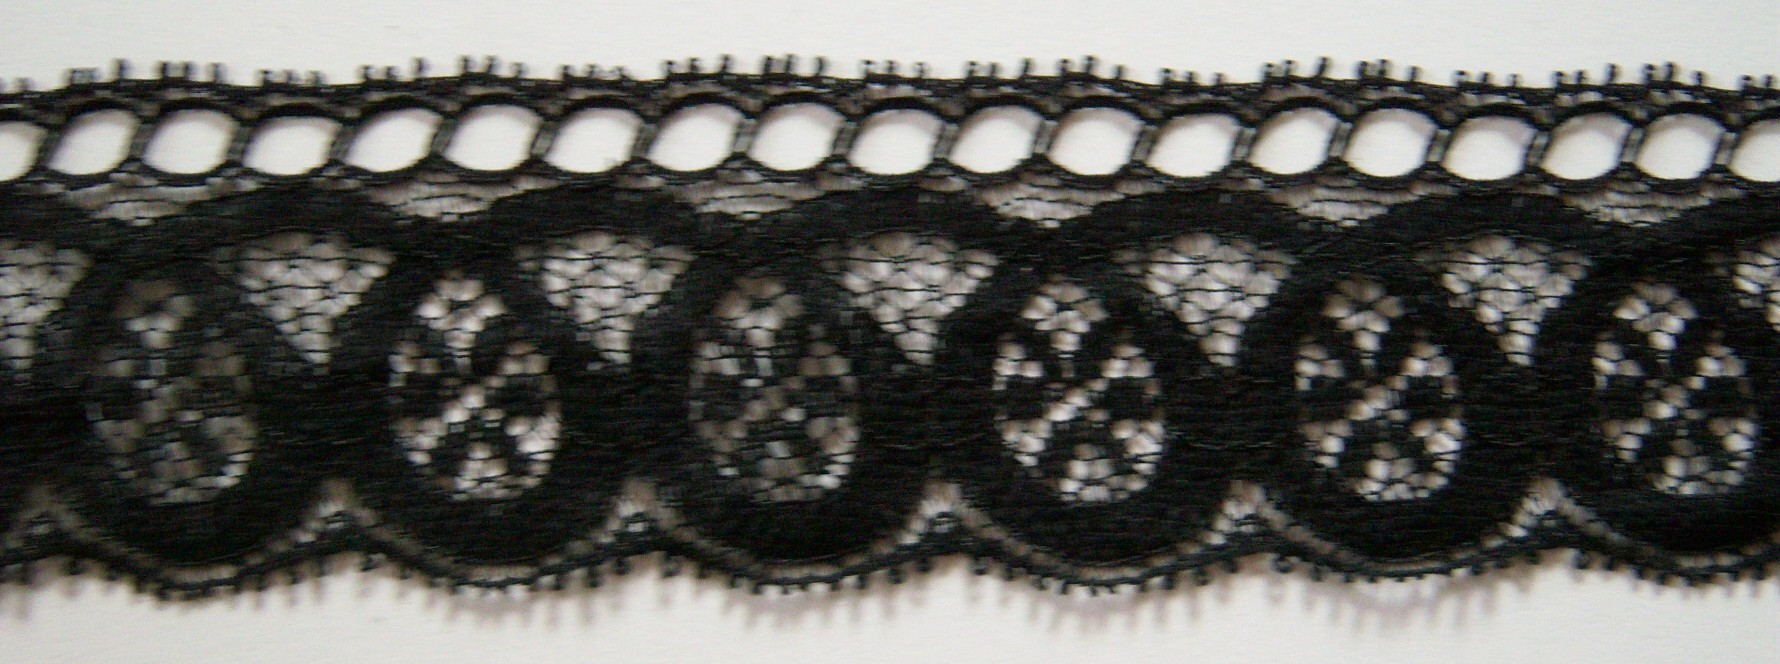 Black 1 1/2" Nylon Lace